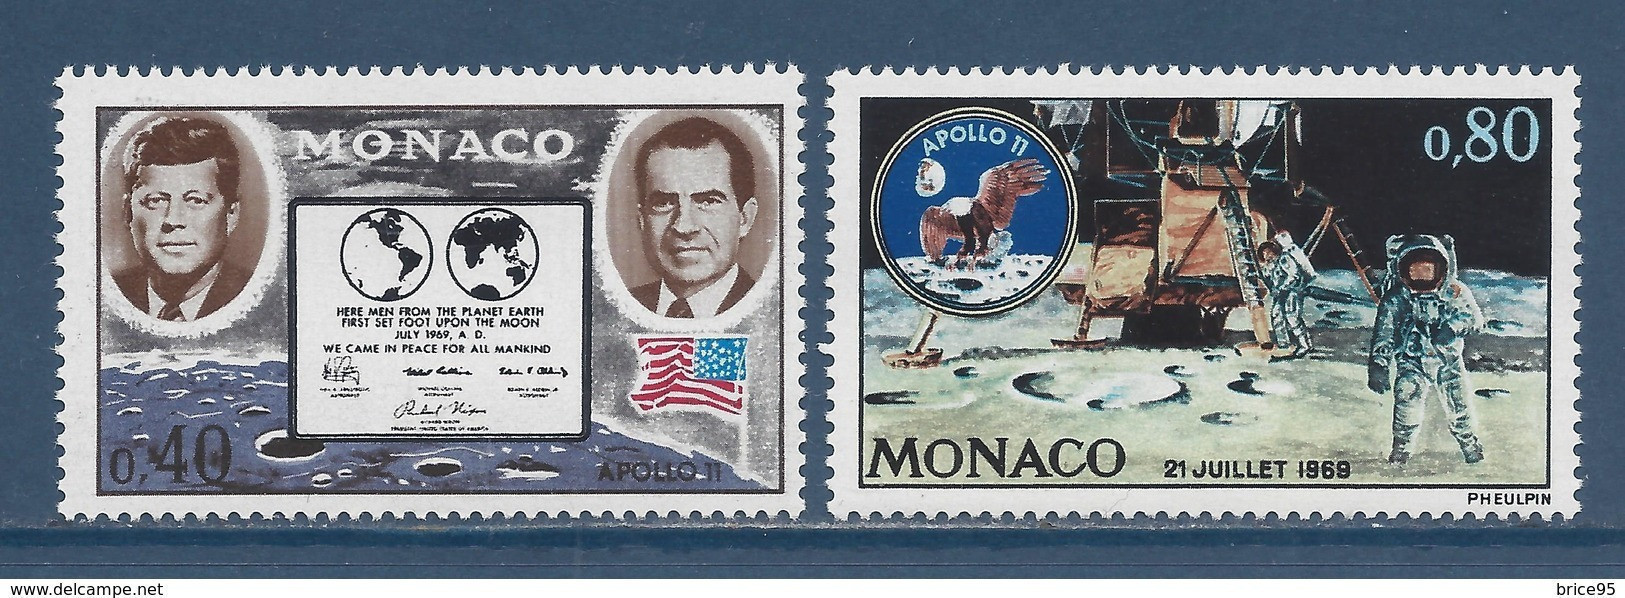 Monaco - YT N° 829 Et 830 ** - Neuf Sans Charnière - 1970 - Nuovi